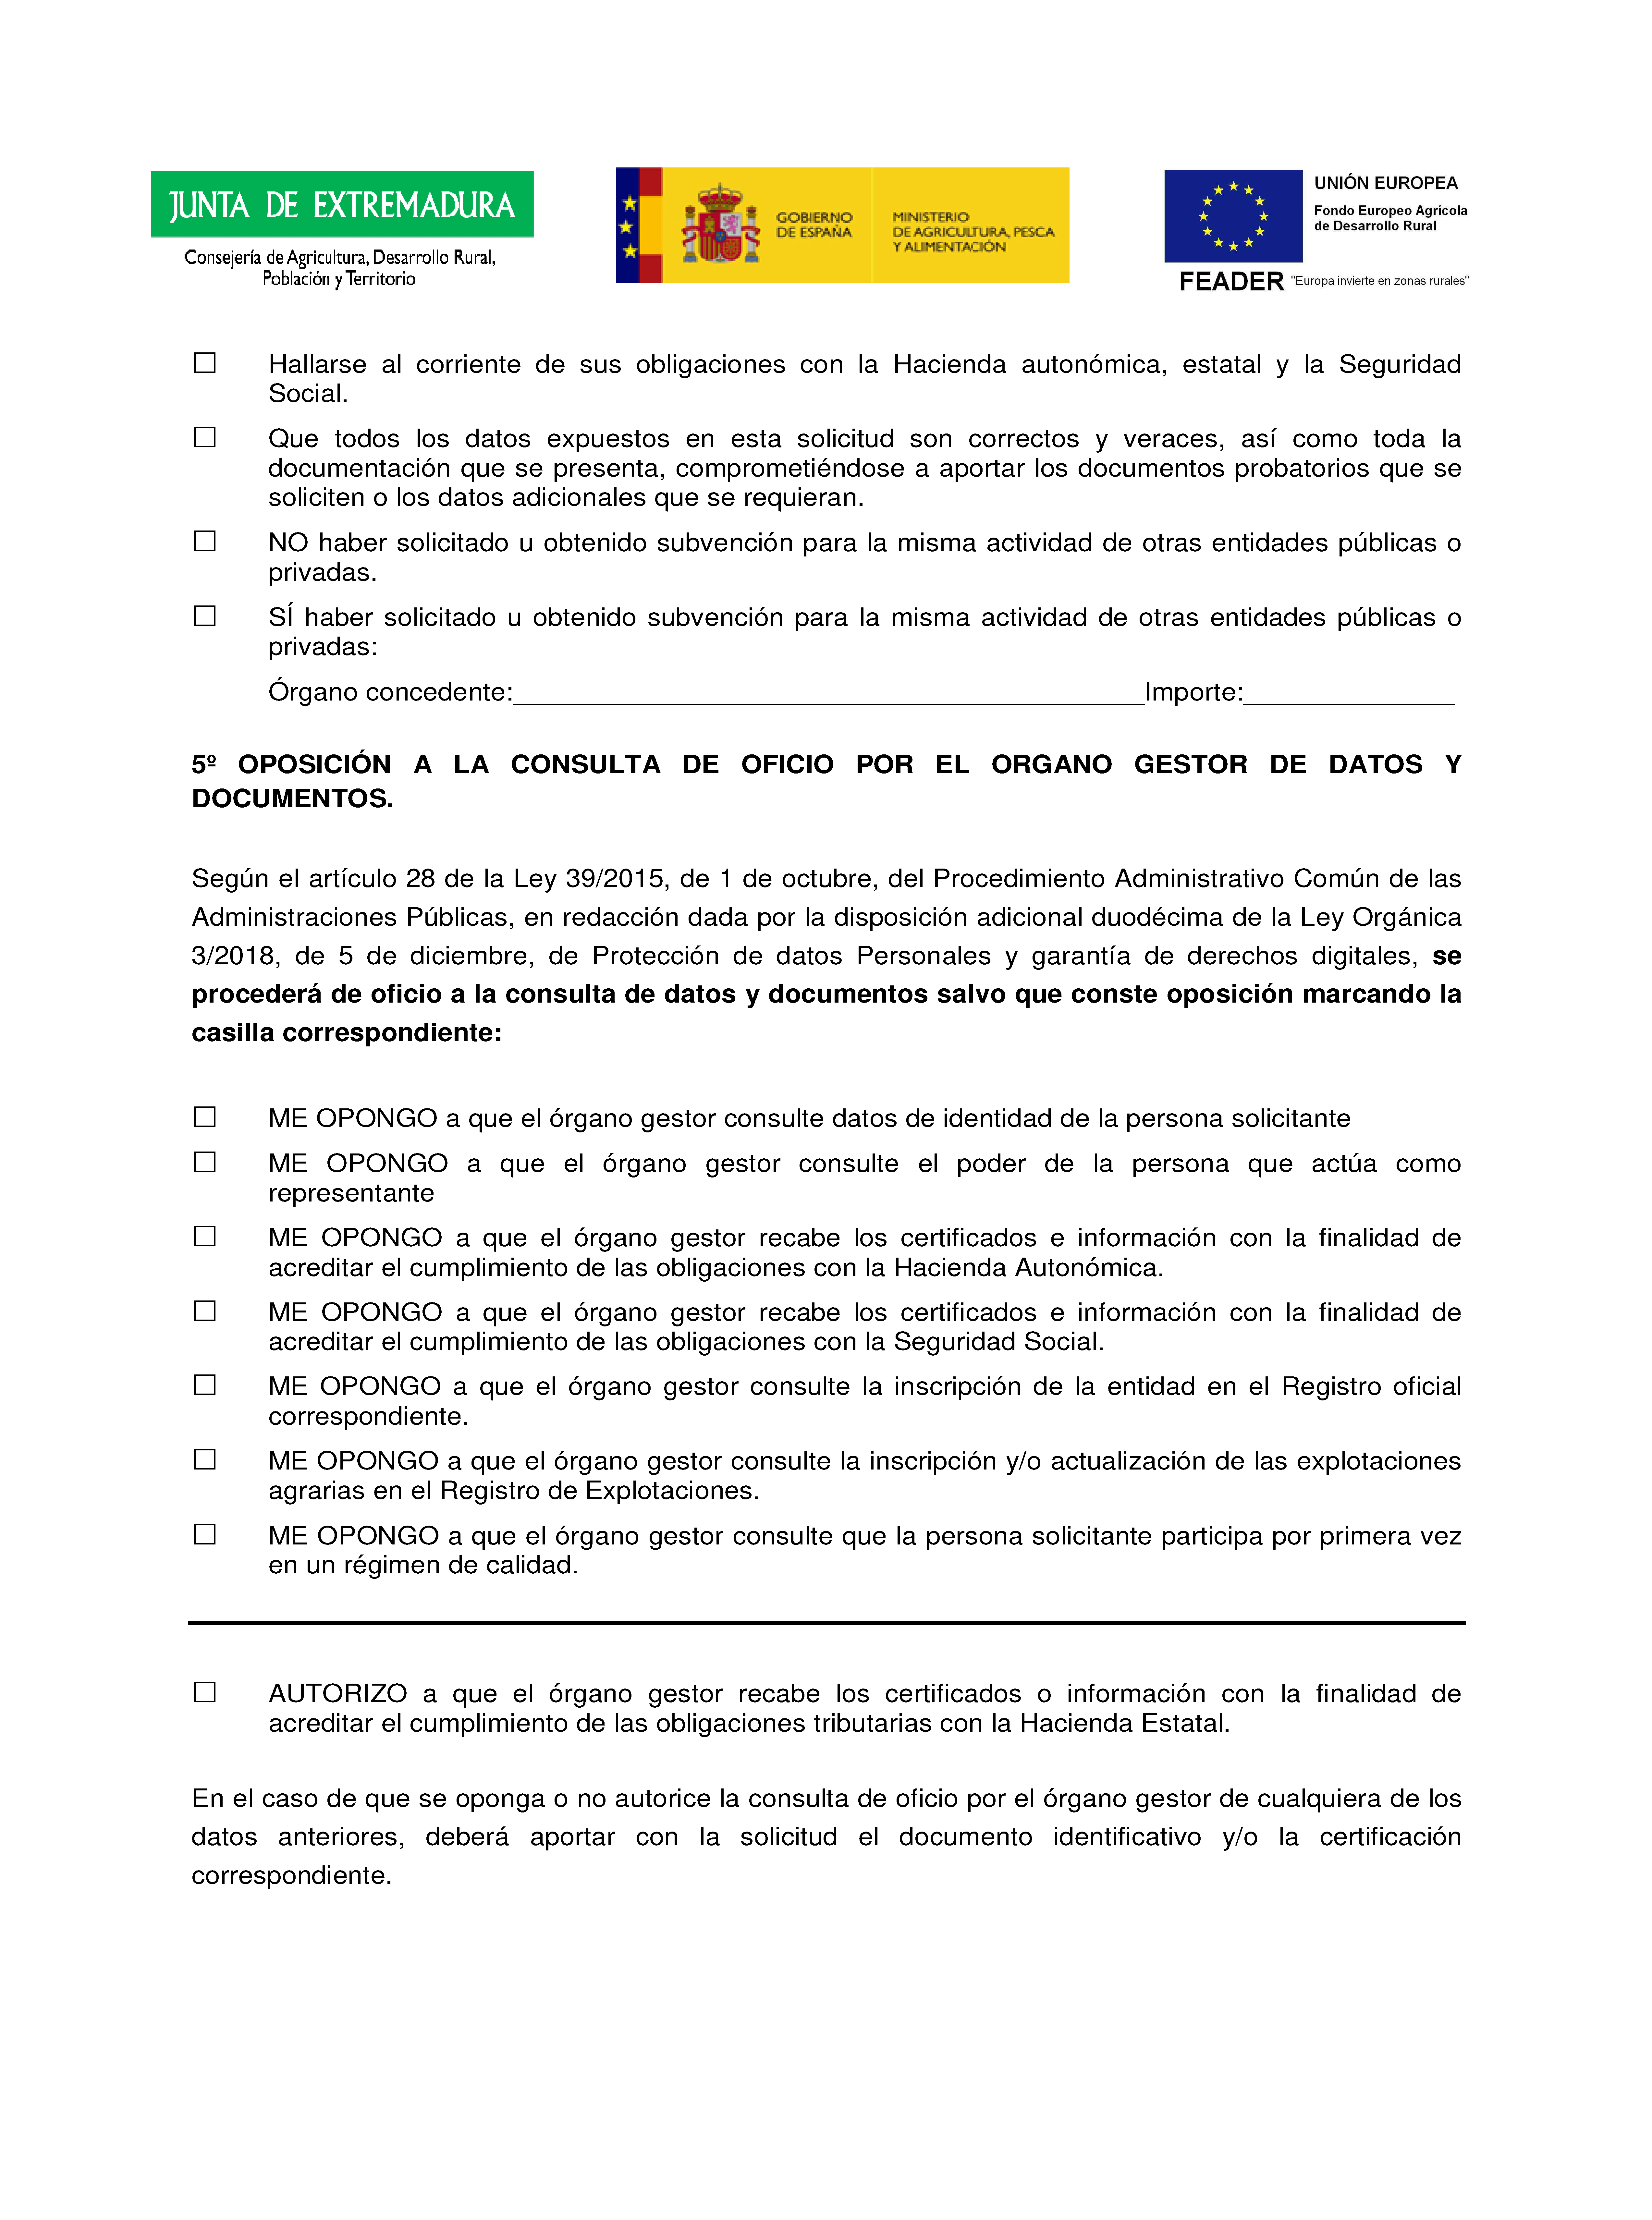 ANEXOS SOLICITUD DE AYUDAS A LOS REGIMENES DE CALIDAD DE LOS PRODUCTOS Pag 3